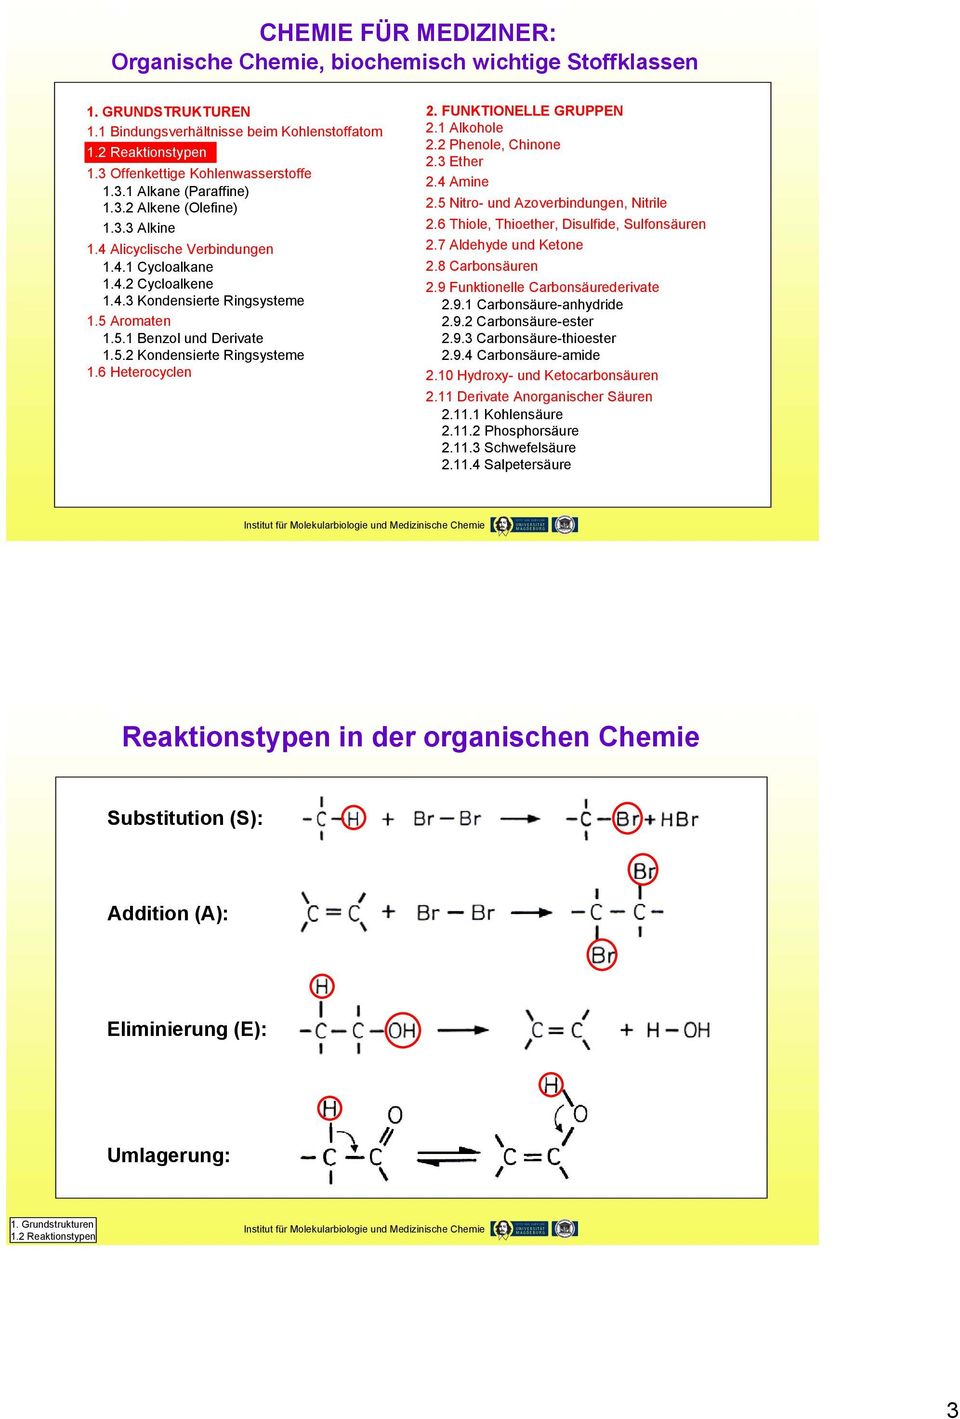 FUNKTIONELLE GRUPPEN 2.1 Alkohole 2.2 Phenole, hinone 2.3 Ether 2.4 Amine 2.5 Nitro- und Azoverbindungen, Nitrile 2.6 Thiole, Thioether, Disulfide, Sulfonsäuren 2.7 Aldehyde und Ketone 2.